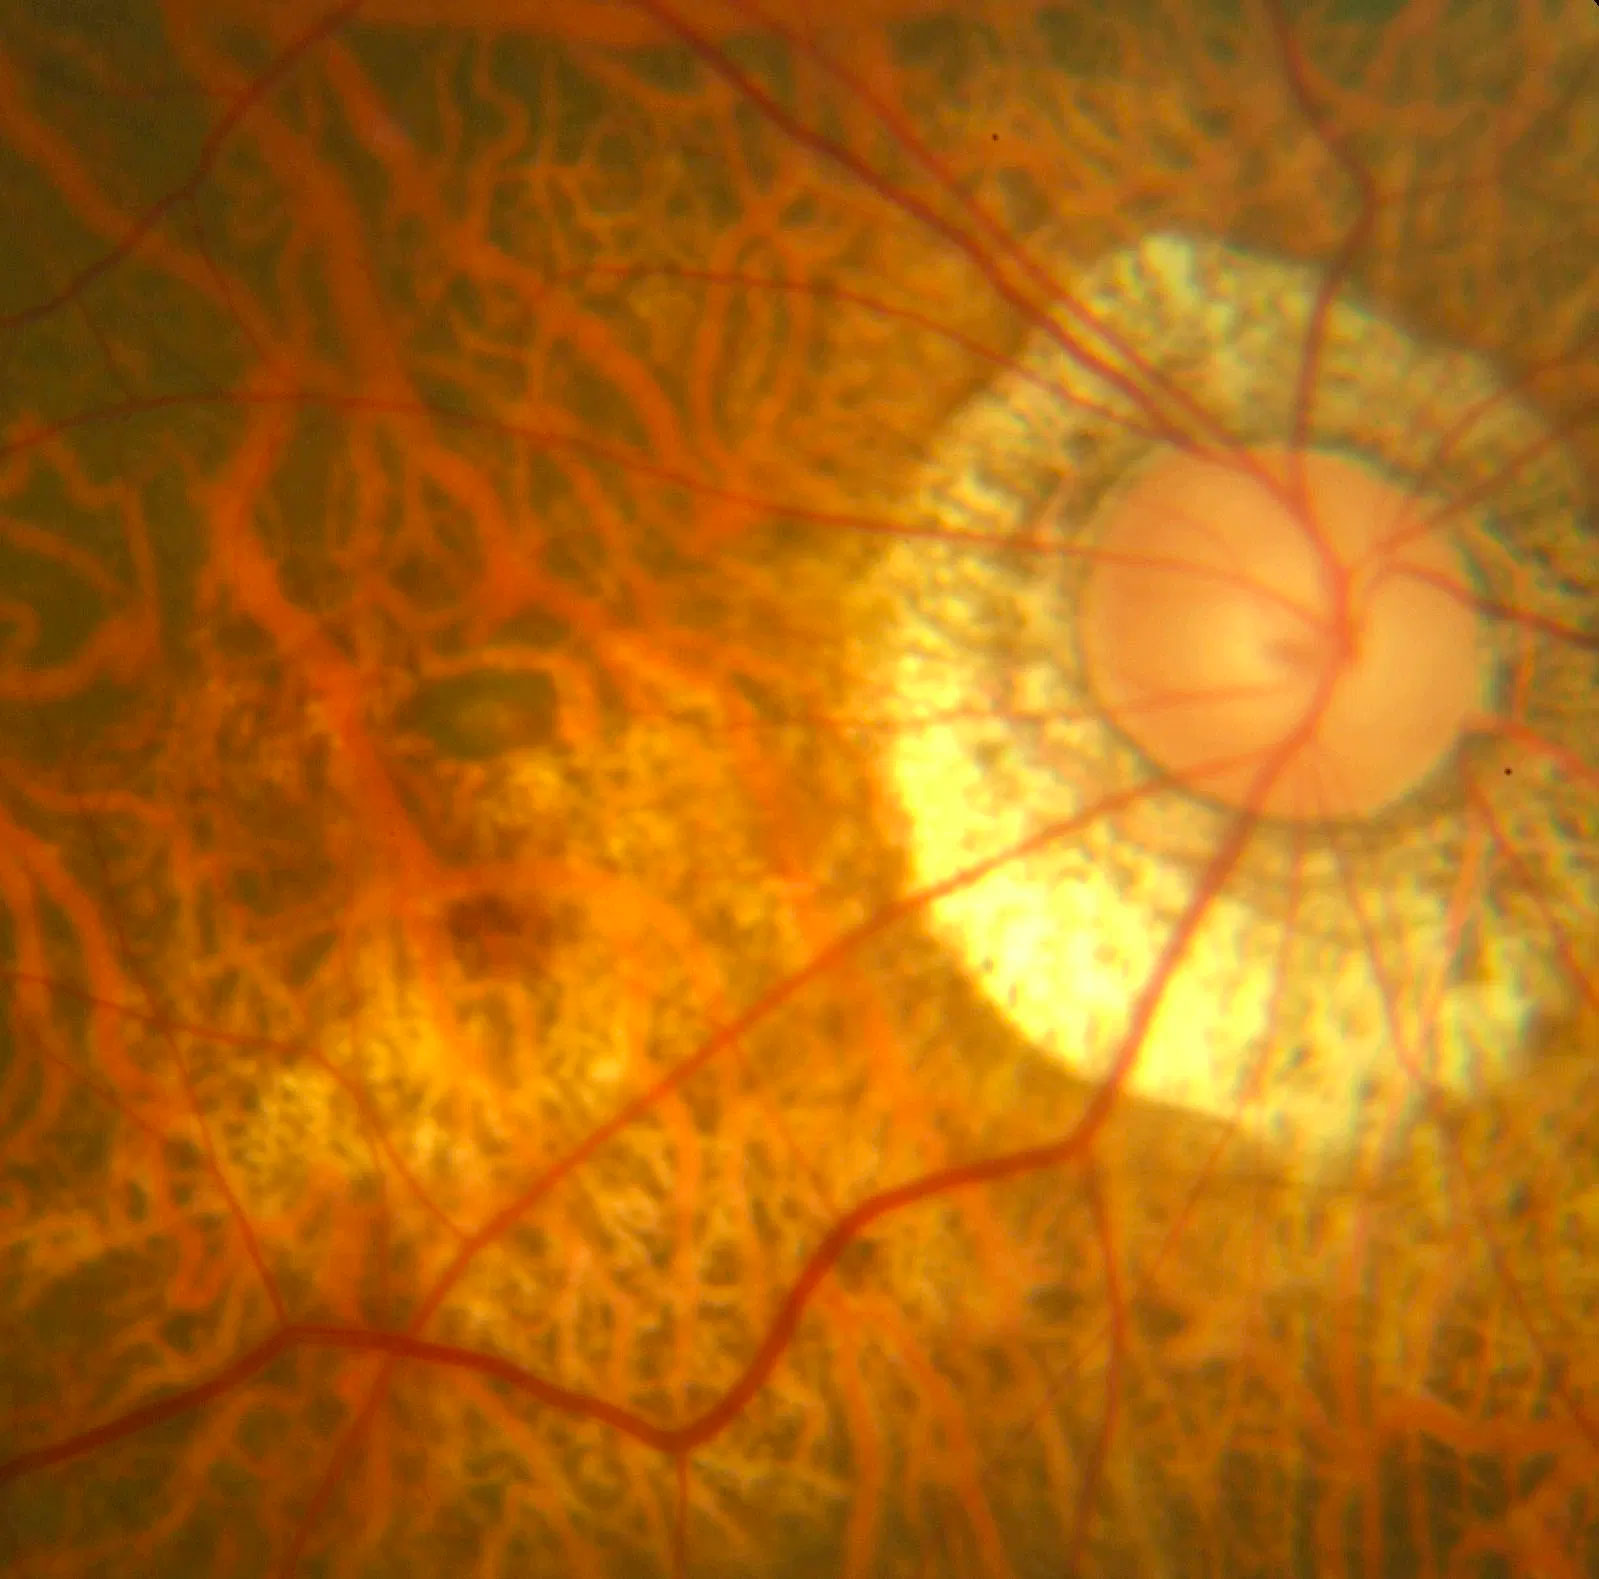 Pathological Myopia